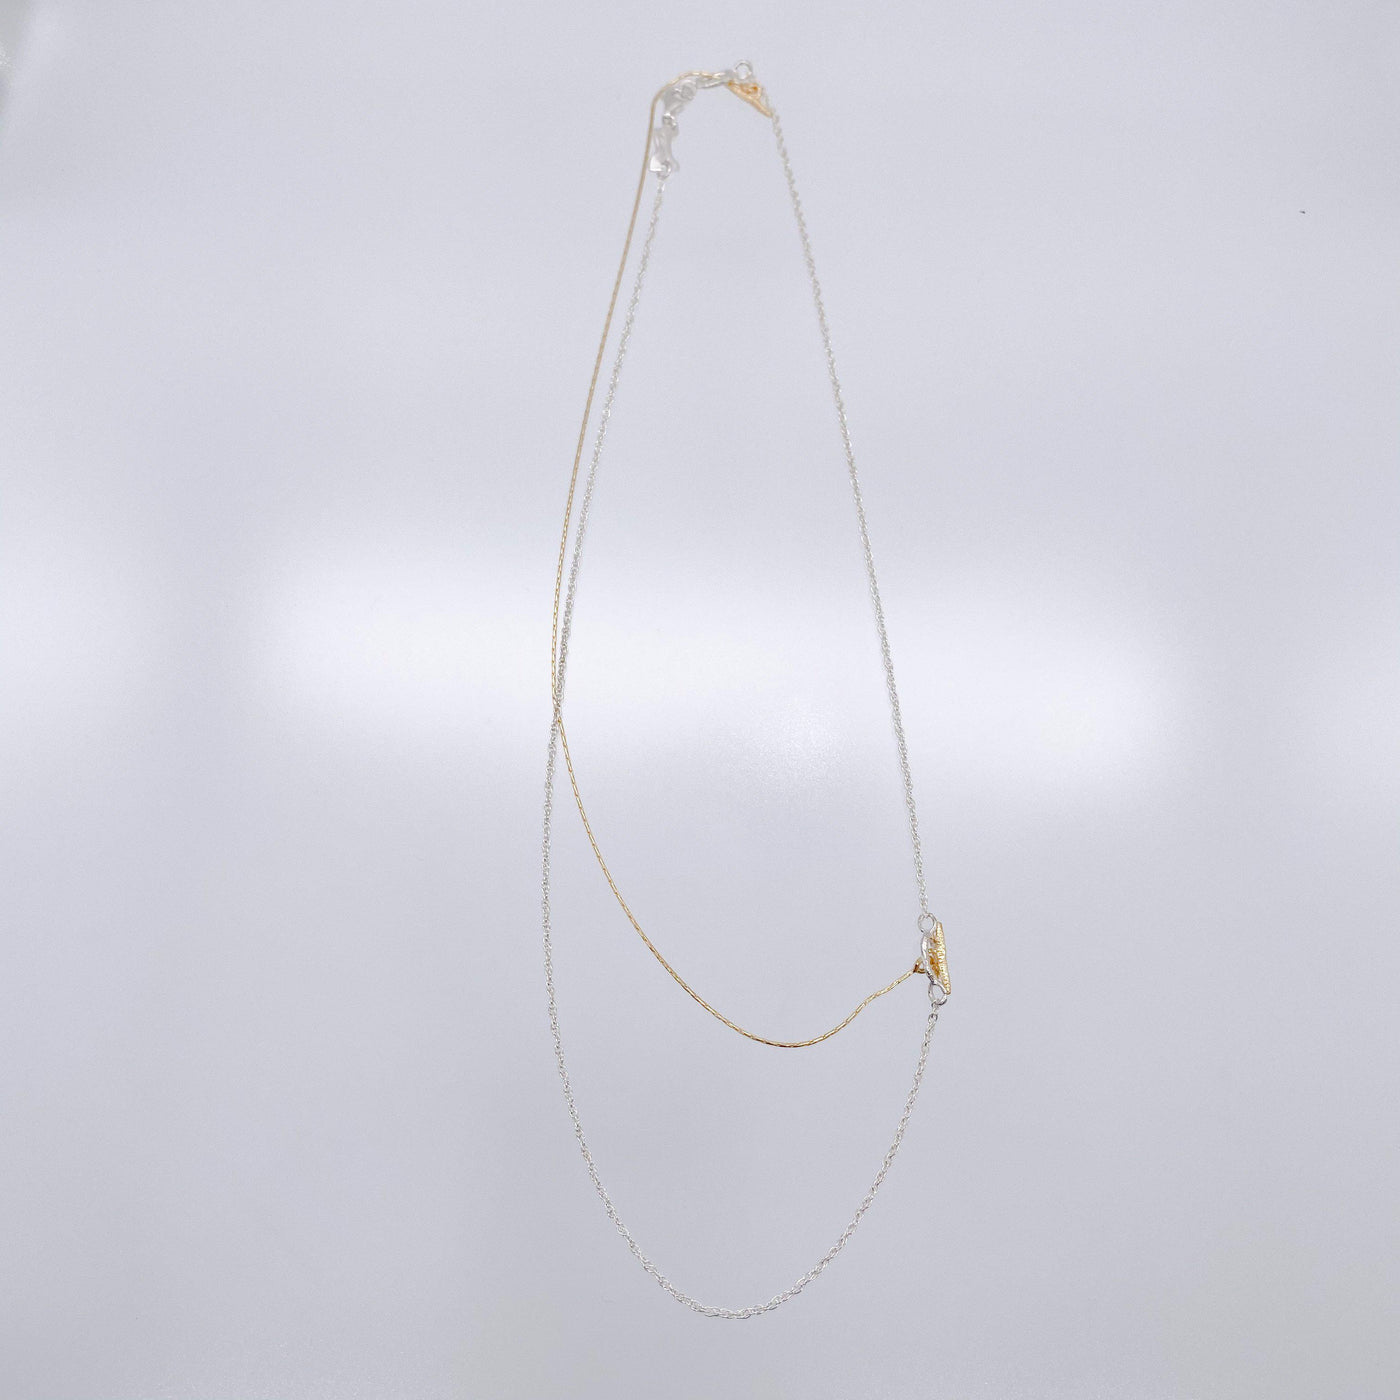 SHAPE OF WATER_courant necklace-necklace-SOUHAIT-unigem